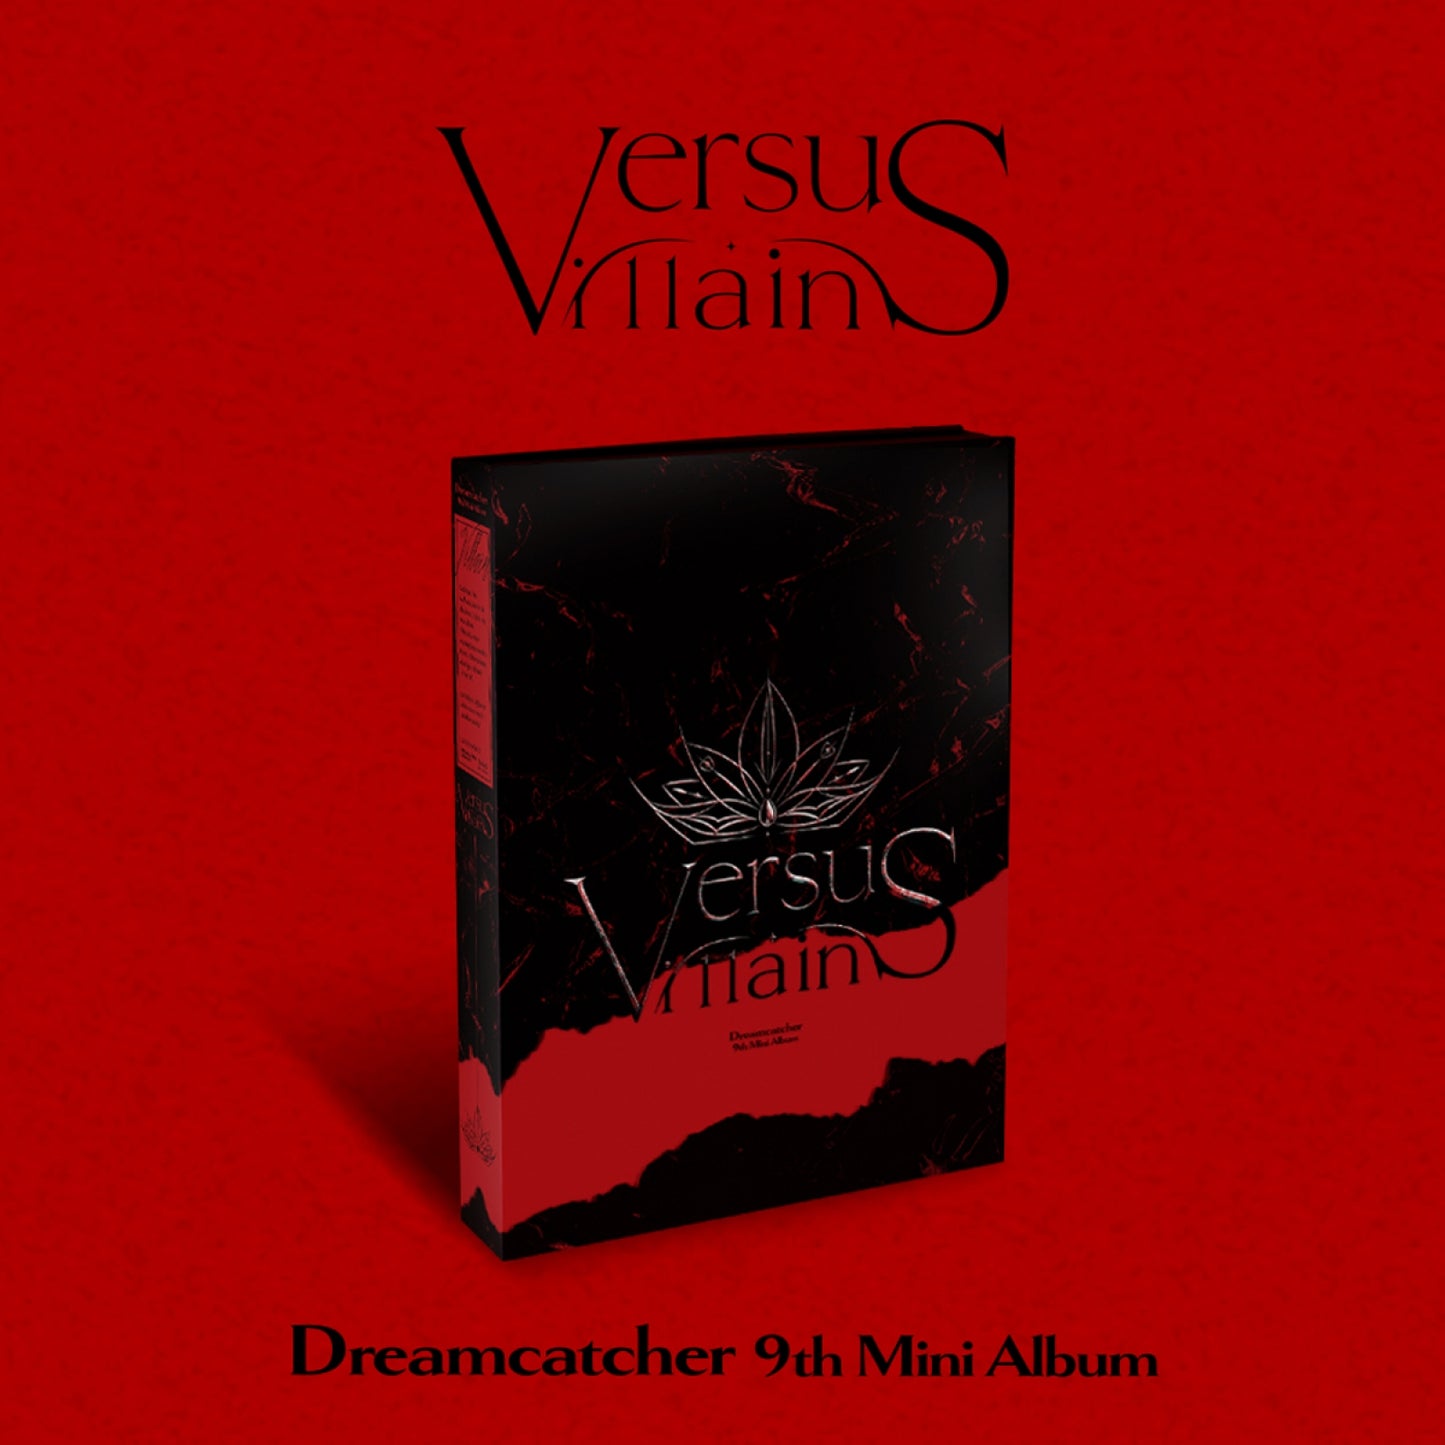 DREAMCATCHER 9th Mini Album : VillainS (C Ver.) Limited Edition